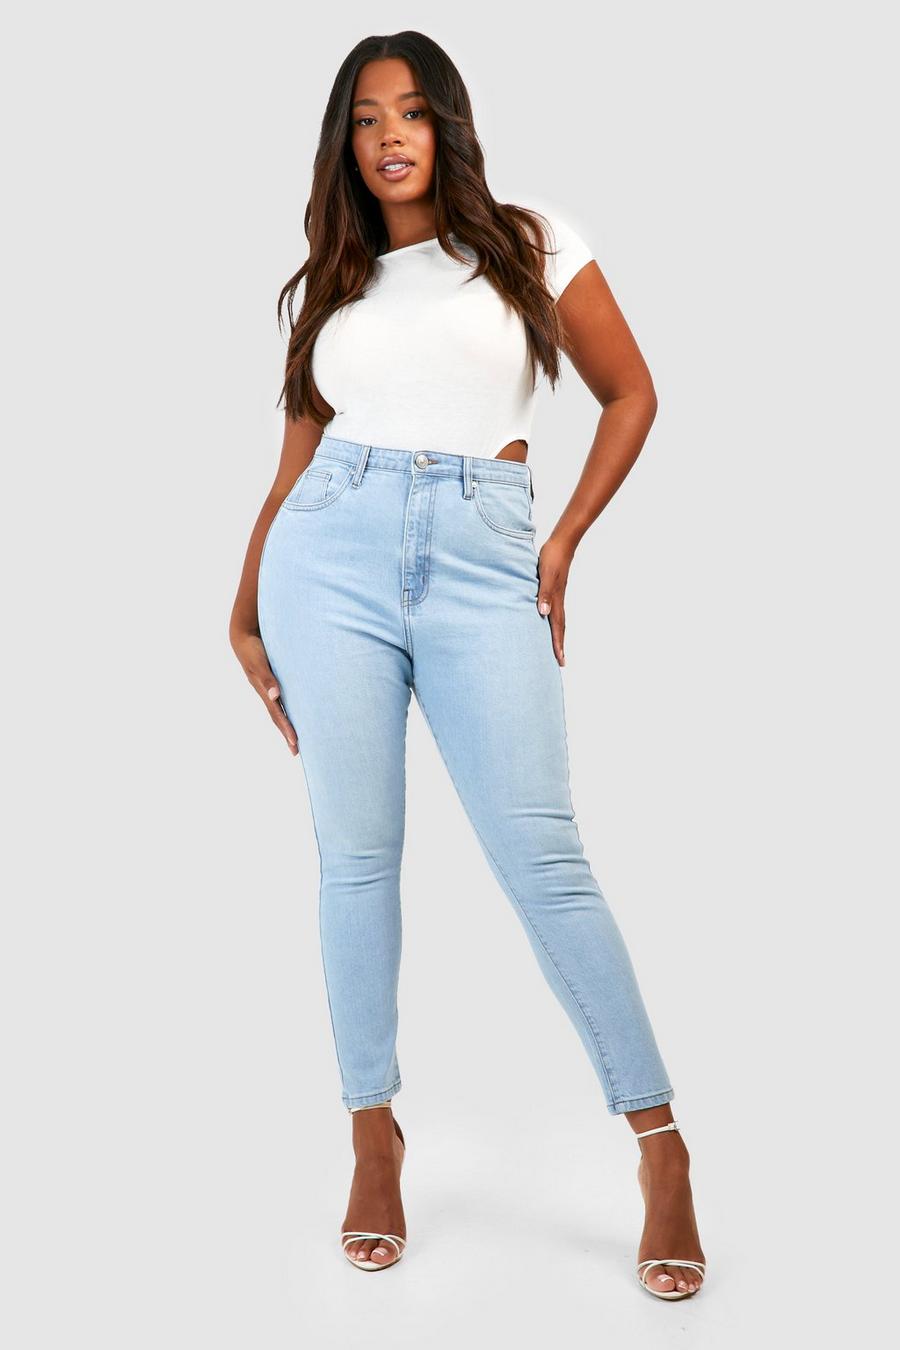 Best Deal for Zxrwany Pregnancy Jeans Extender Light Blue Skinny